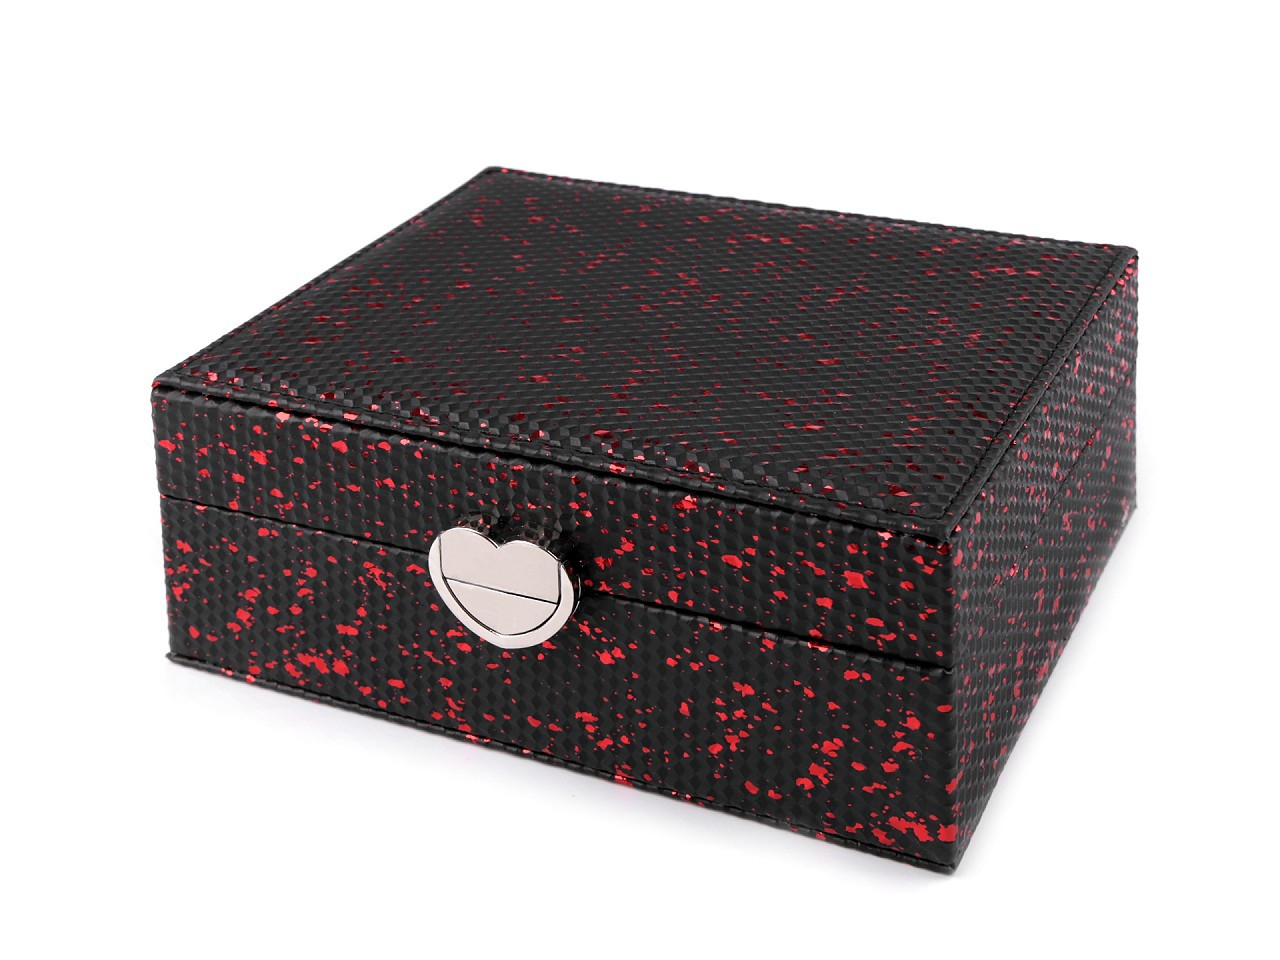 Šperkovnice 15,5x20,5x8 cm, barva 3 černá červená